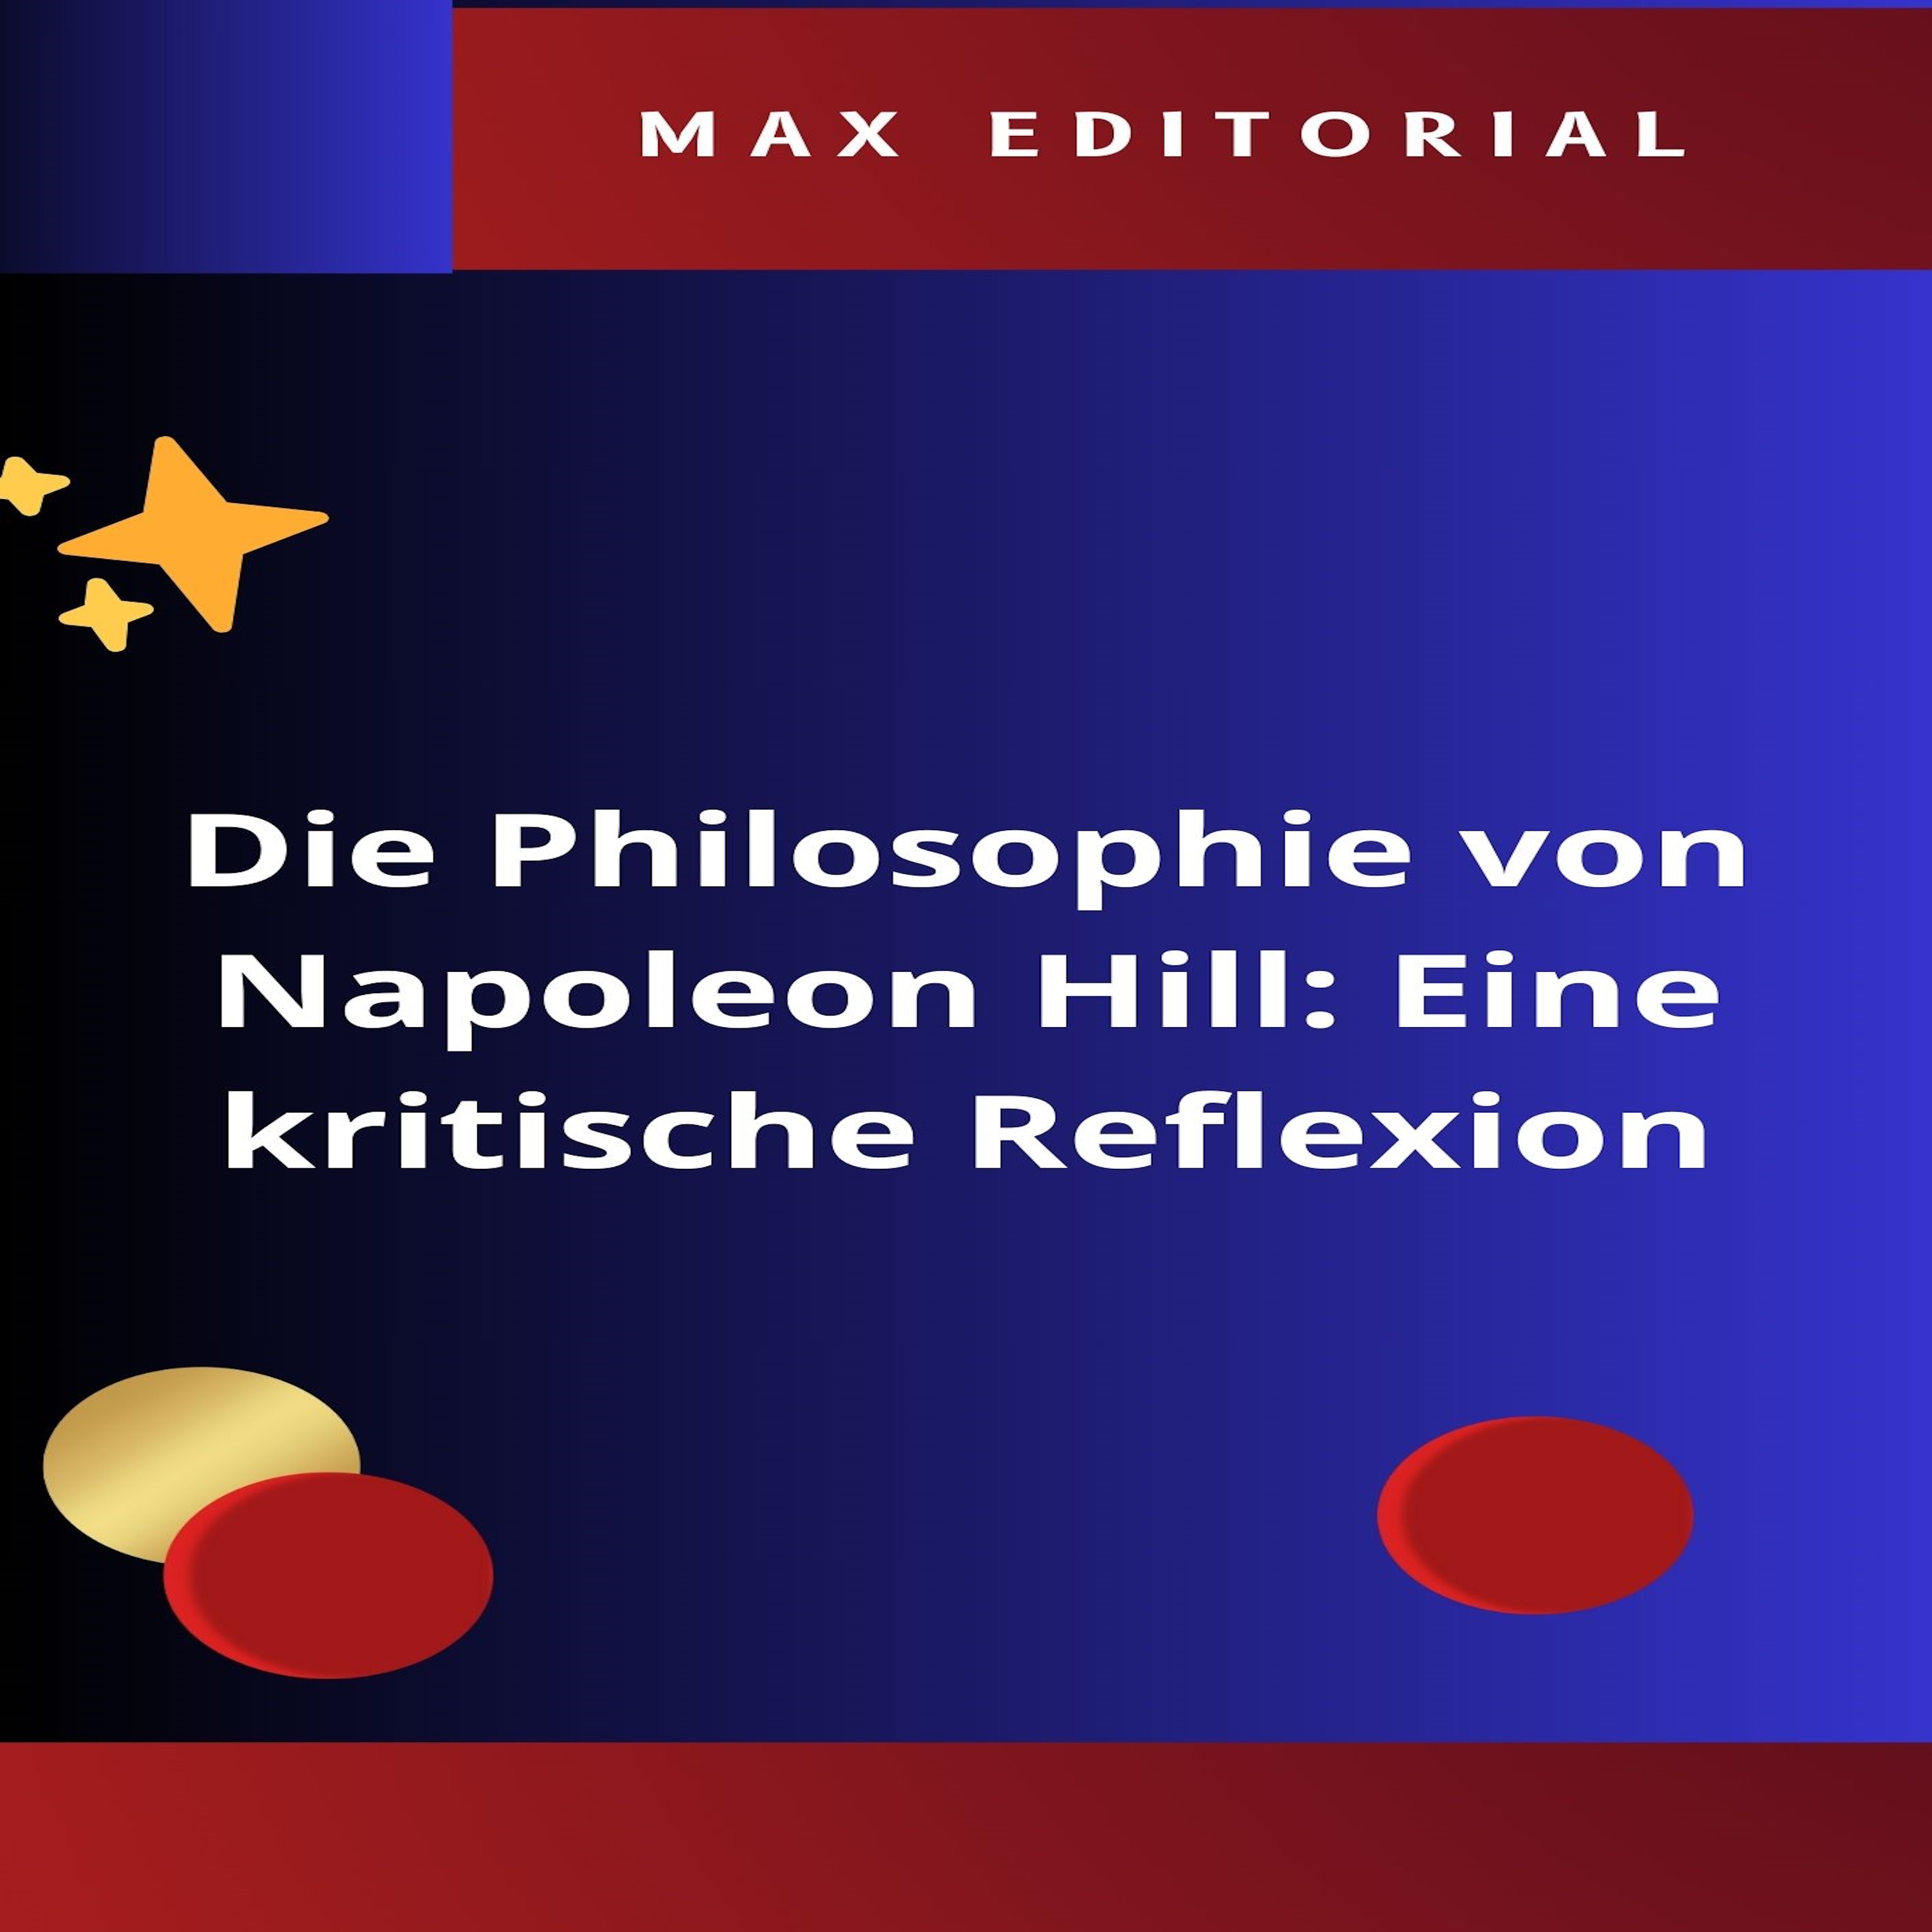 Die Philosophie von Napoleon Hill: Eine kritische Reflexion